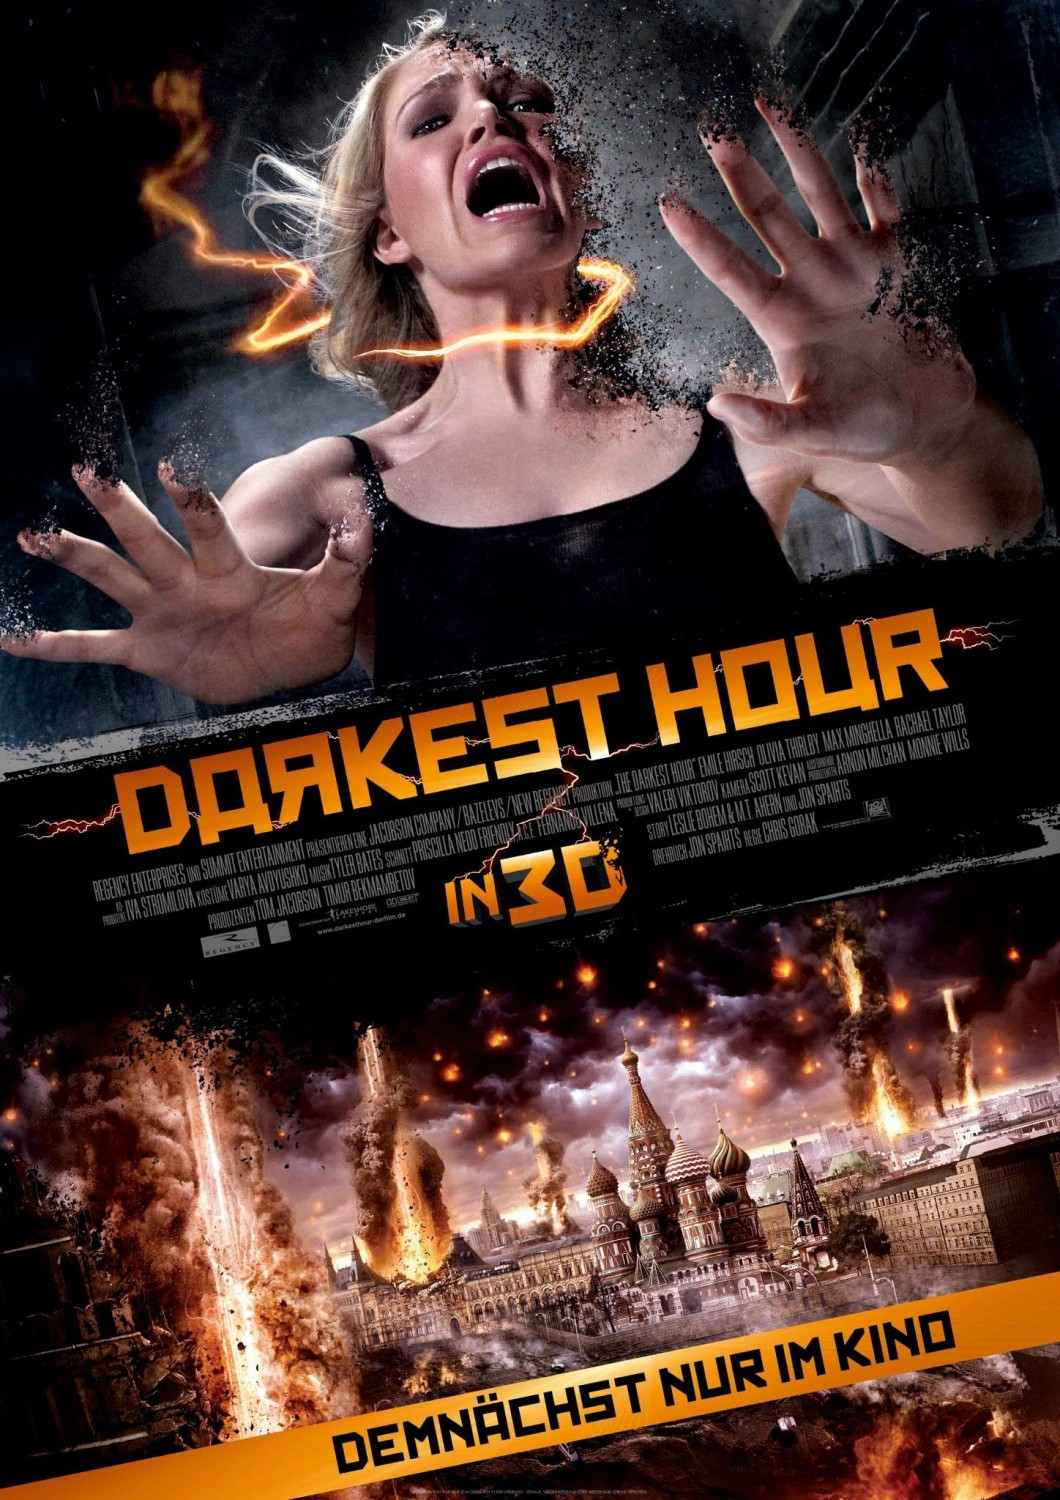 The Darkest Hour Poster